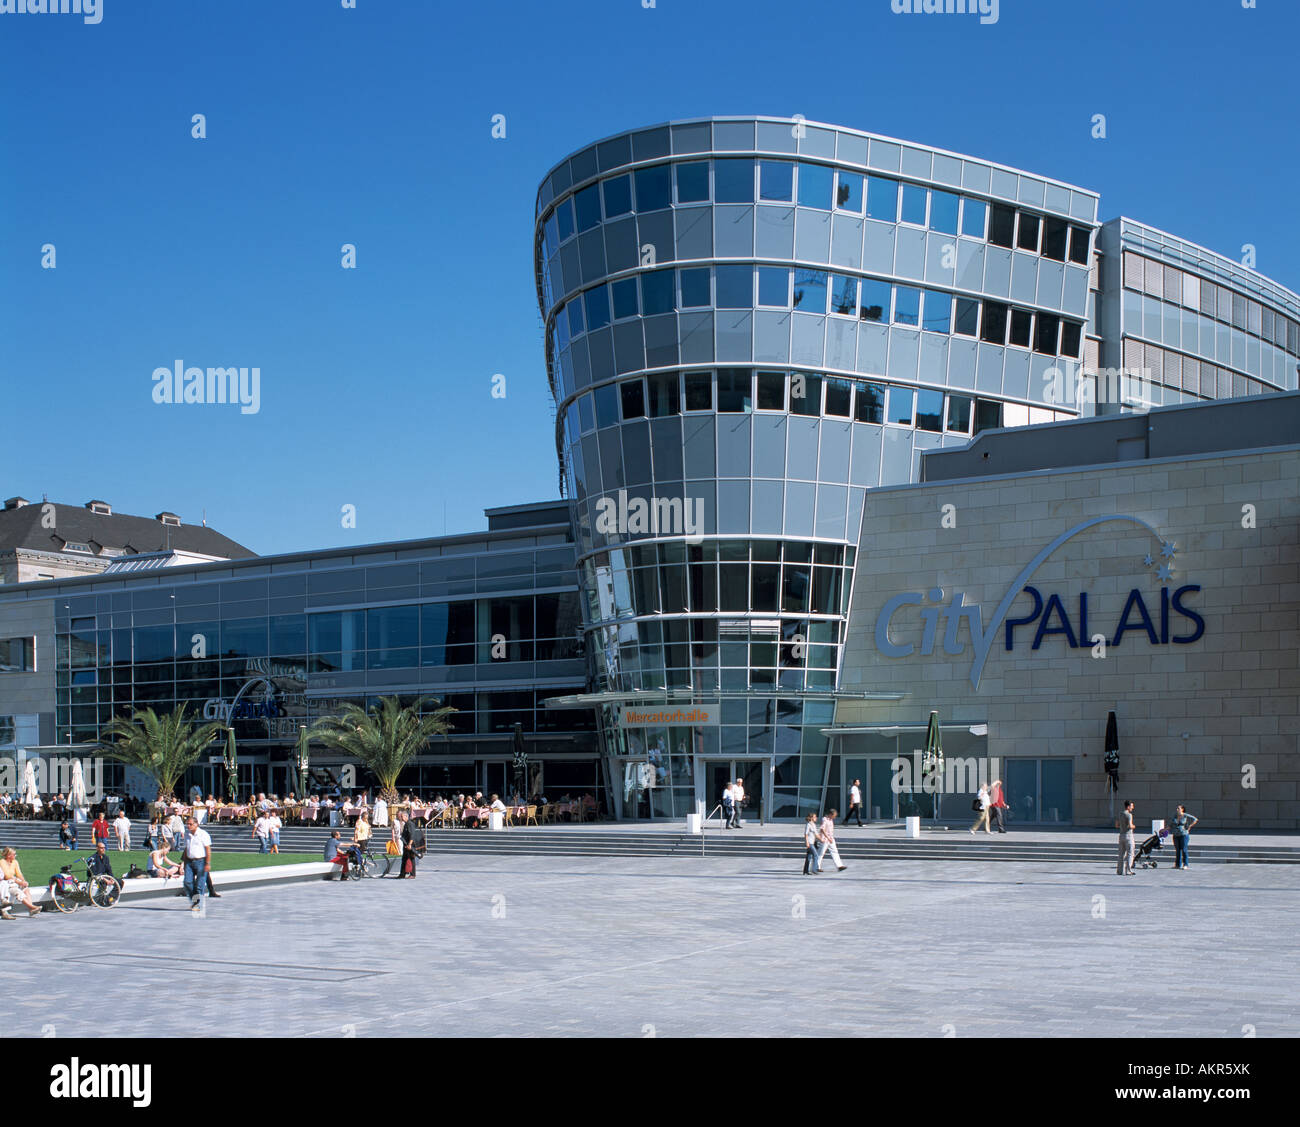 City Palais, Neue Mercatorhalle, Neue Mitte in Duisburg, Rhein, Ruhrgebiet, Nordrhein-Westfalen Stock Photo